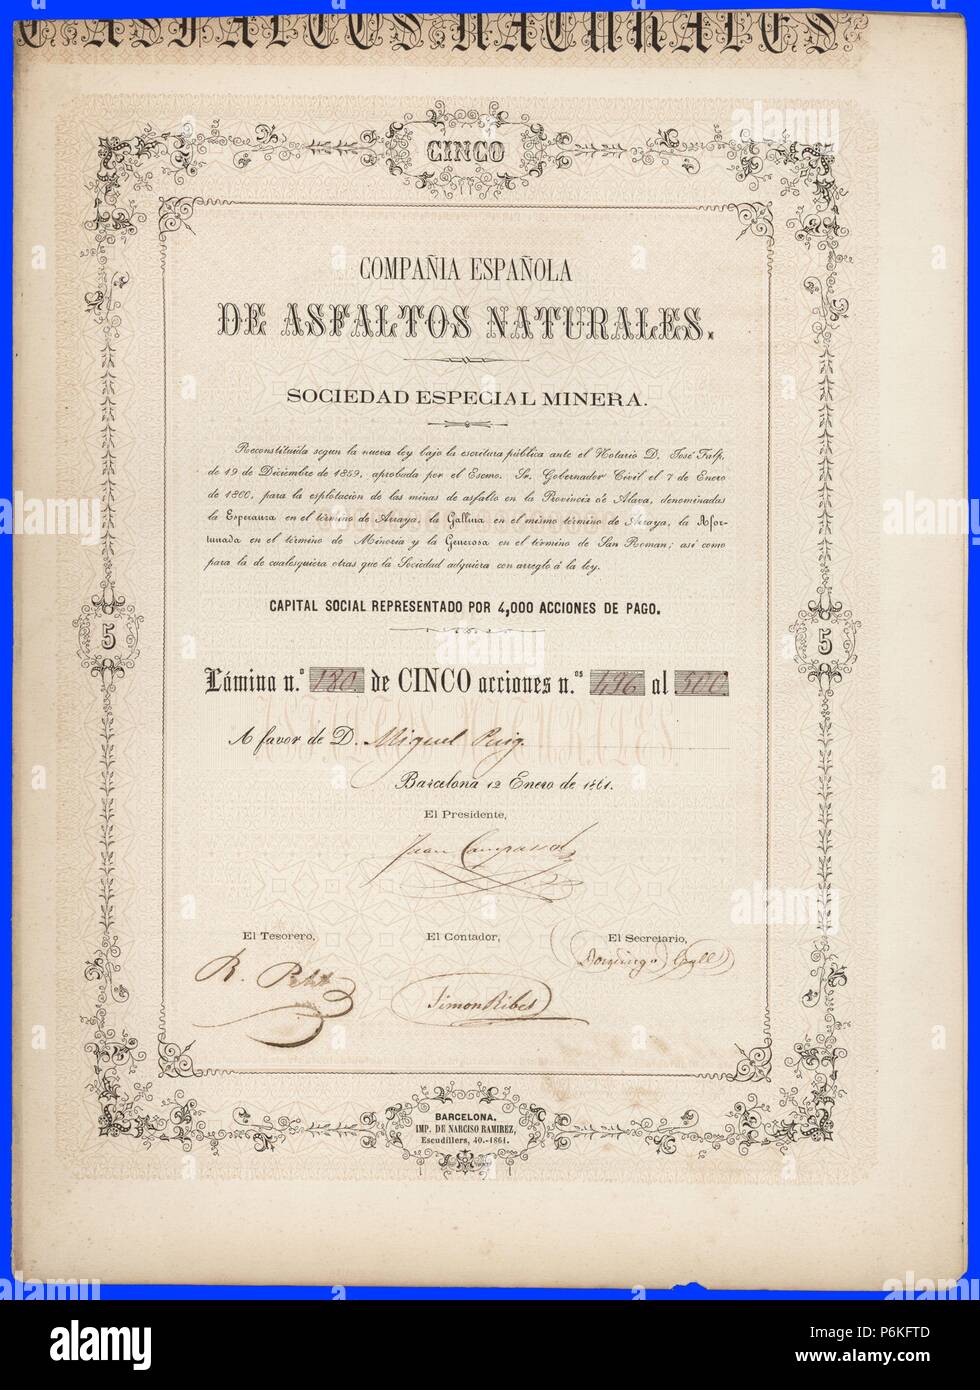 Título de cinco acciones en reales de vellón de la Compañía Española de Asfaltos Naturales, Sociedad Especial Minera. Barcelona, 12 de enero de 1861. Stock Photo